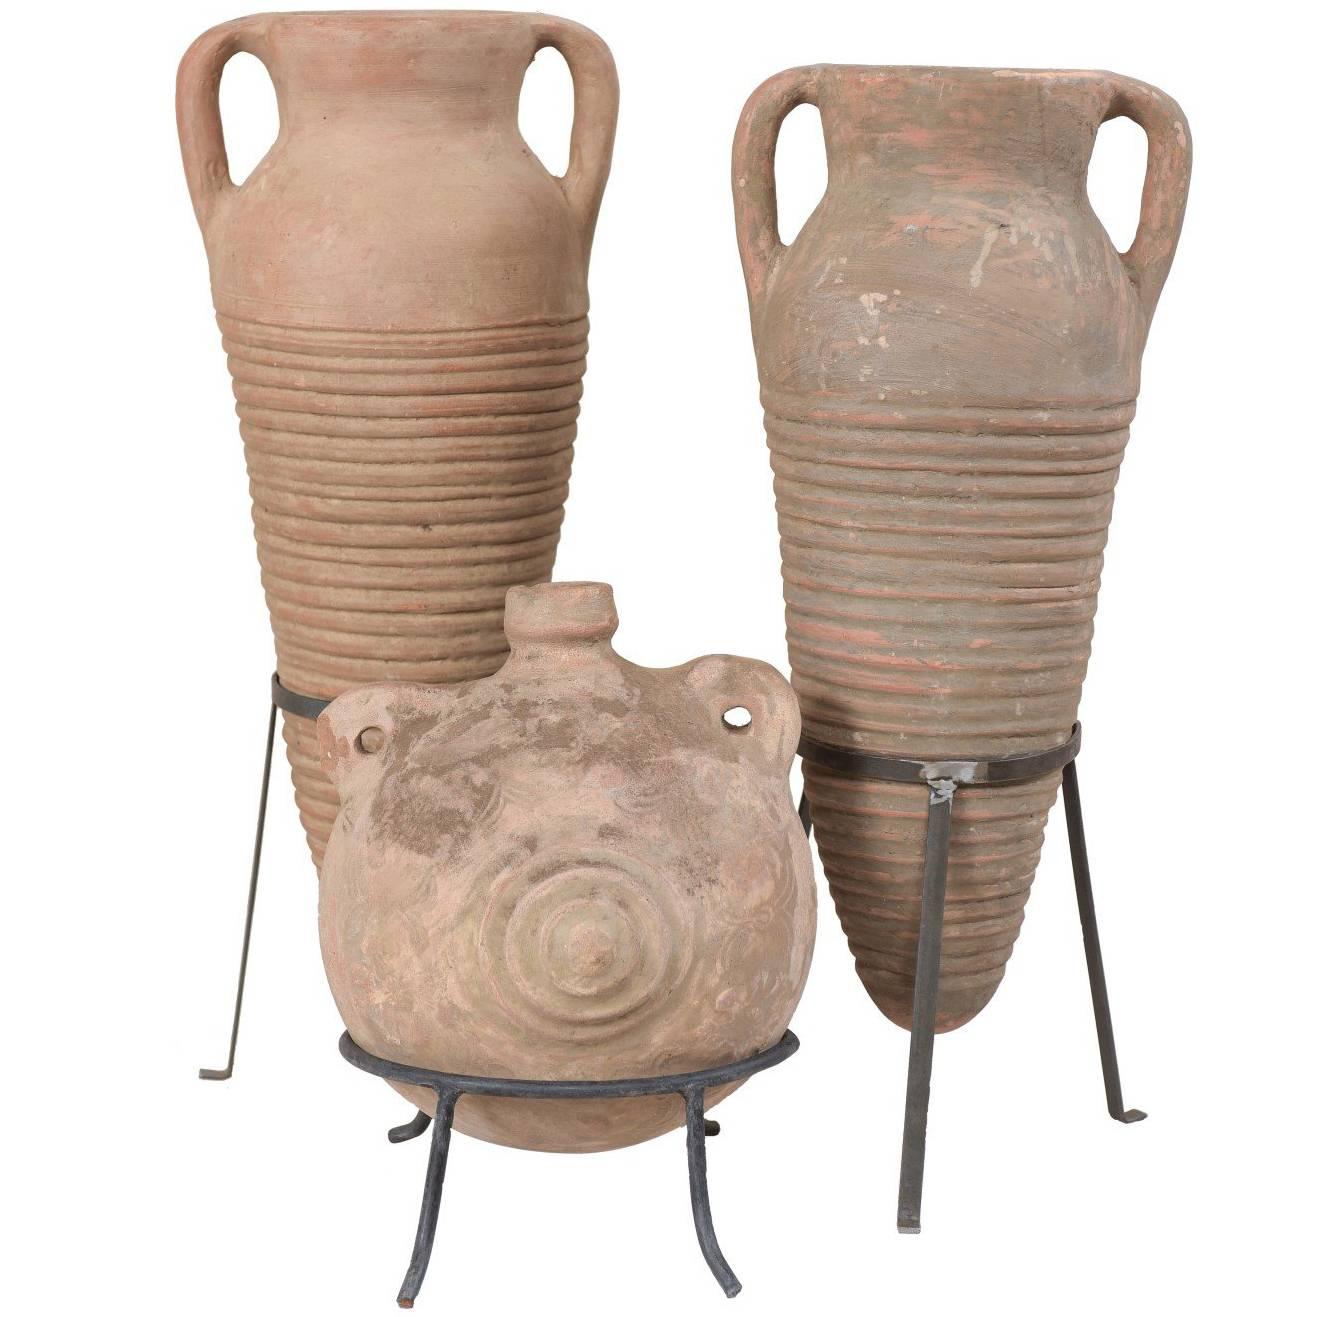 Collection de trois pots en terre cuite de style colonial espagnol méditerranéen